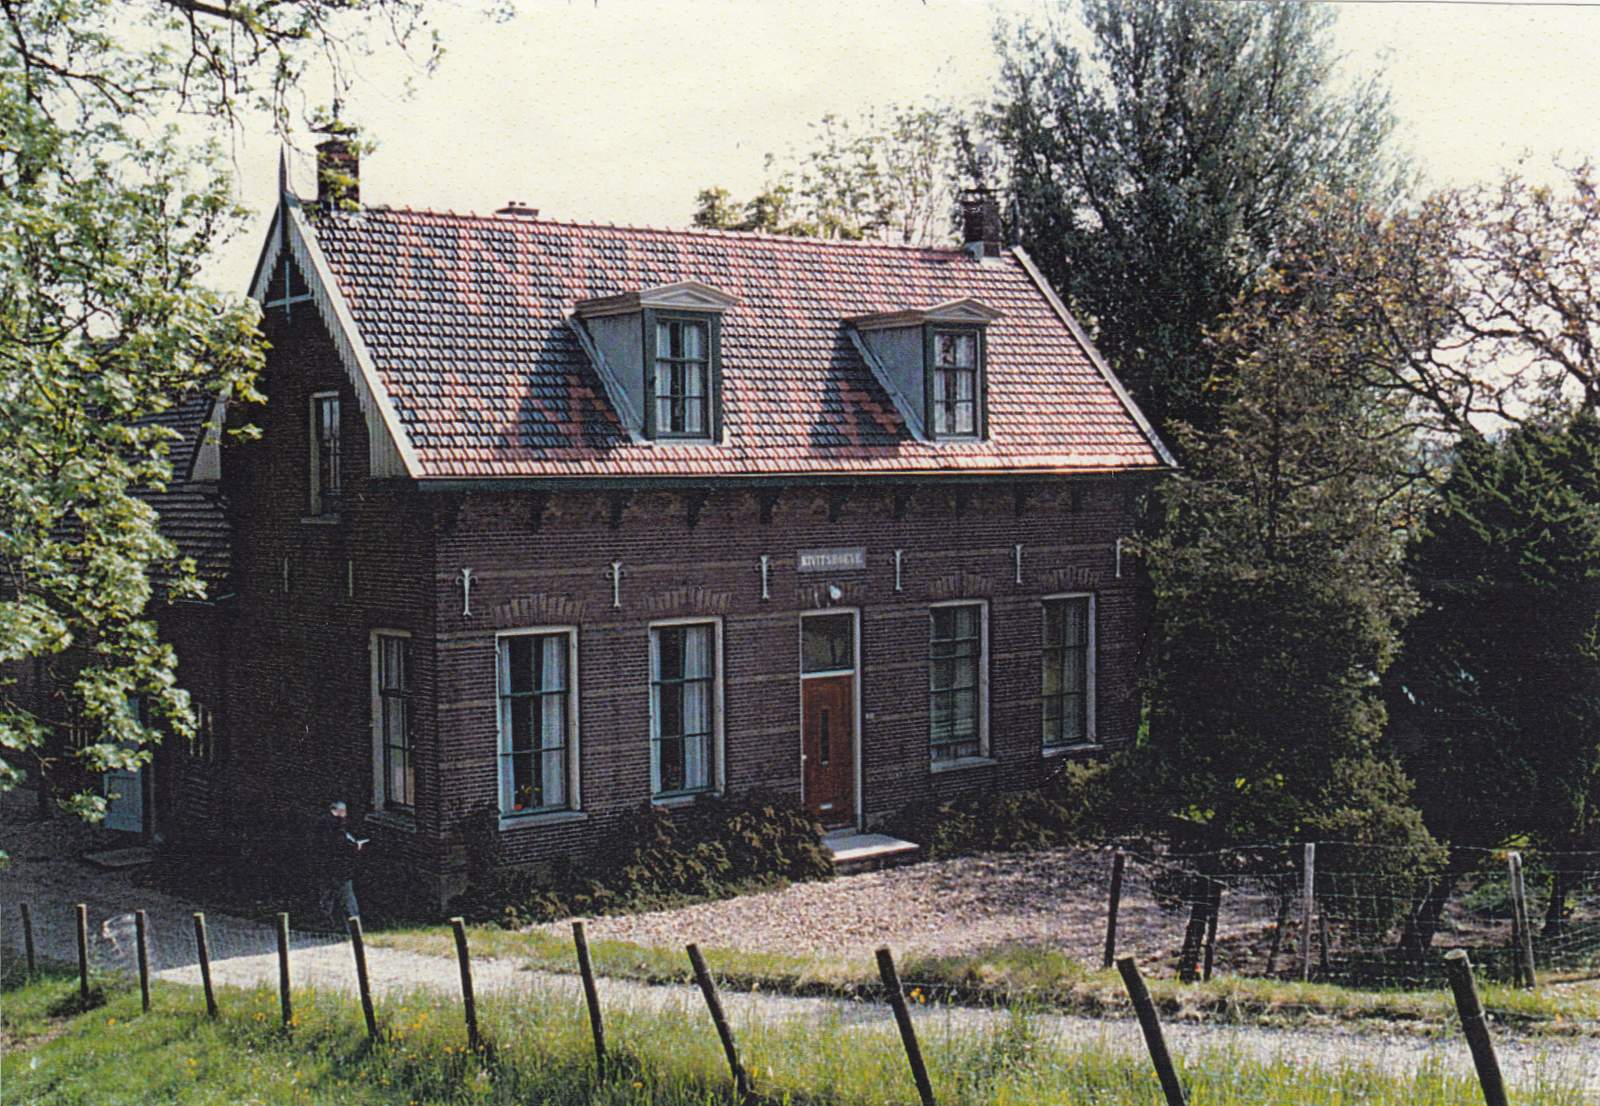 017-356 - Wijk D - Boerderij Gebr. Vink, laatste huis in wijk D.jpg